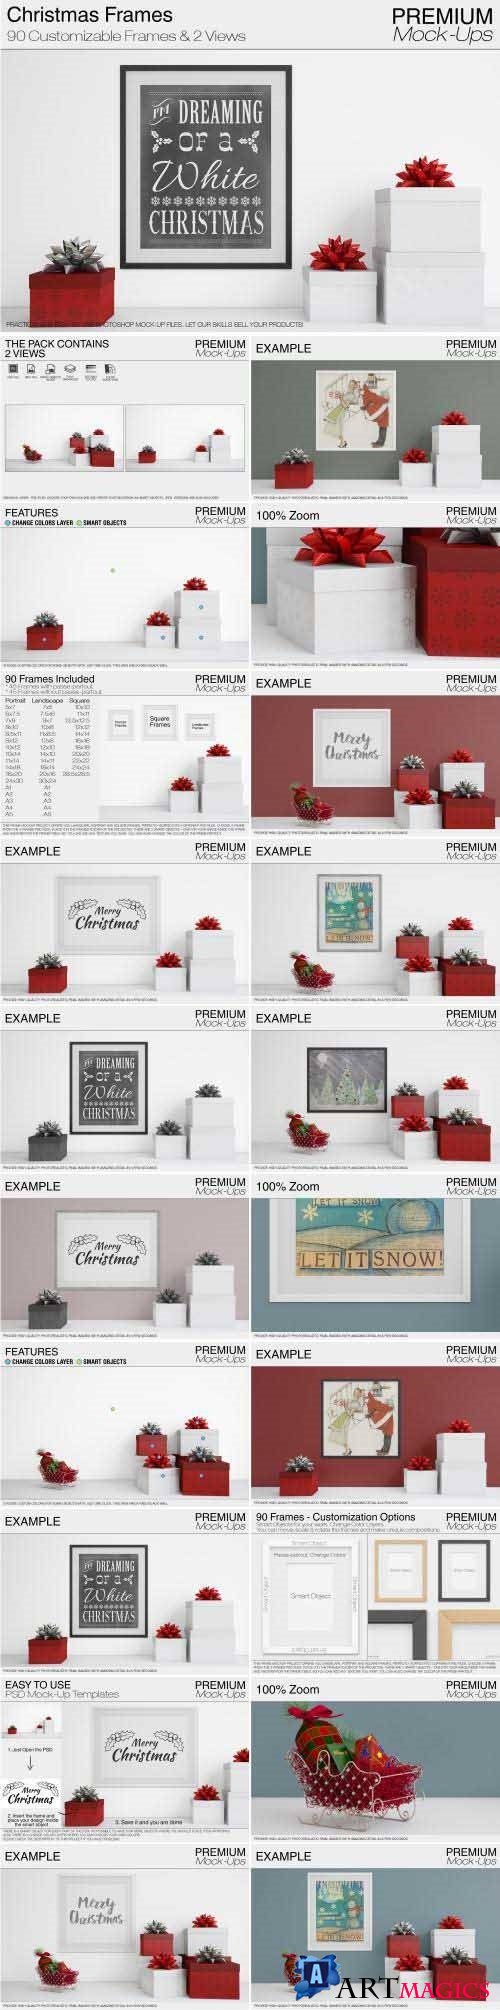 Christmas Frames Pack - 2047431